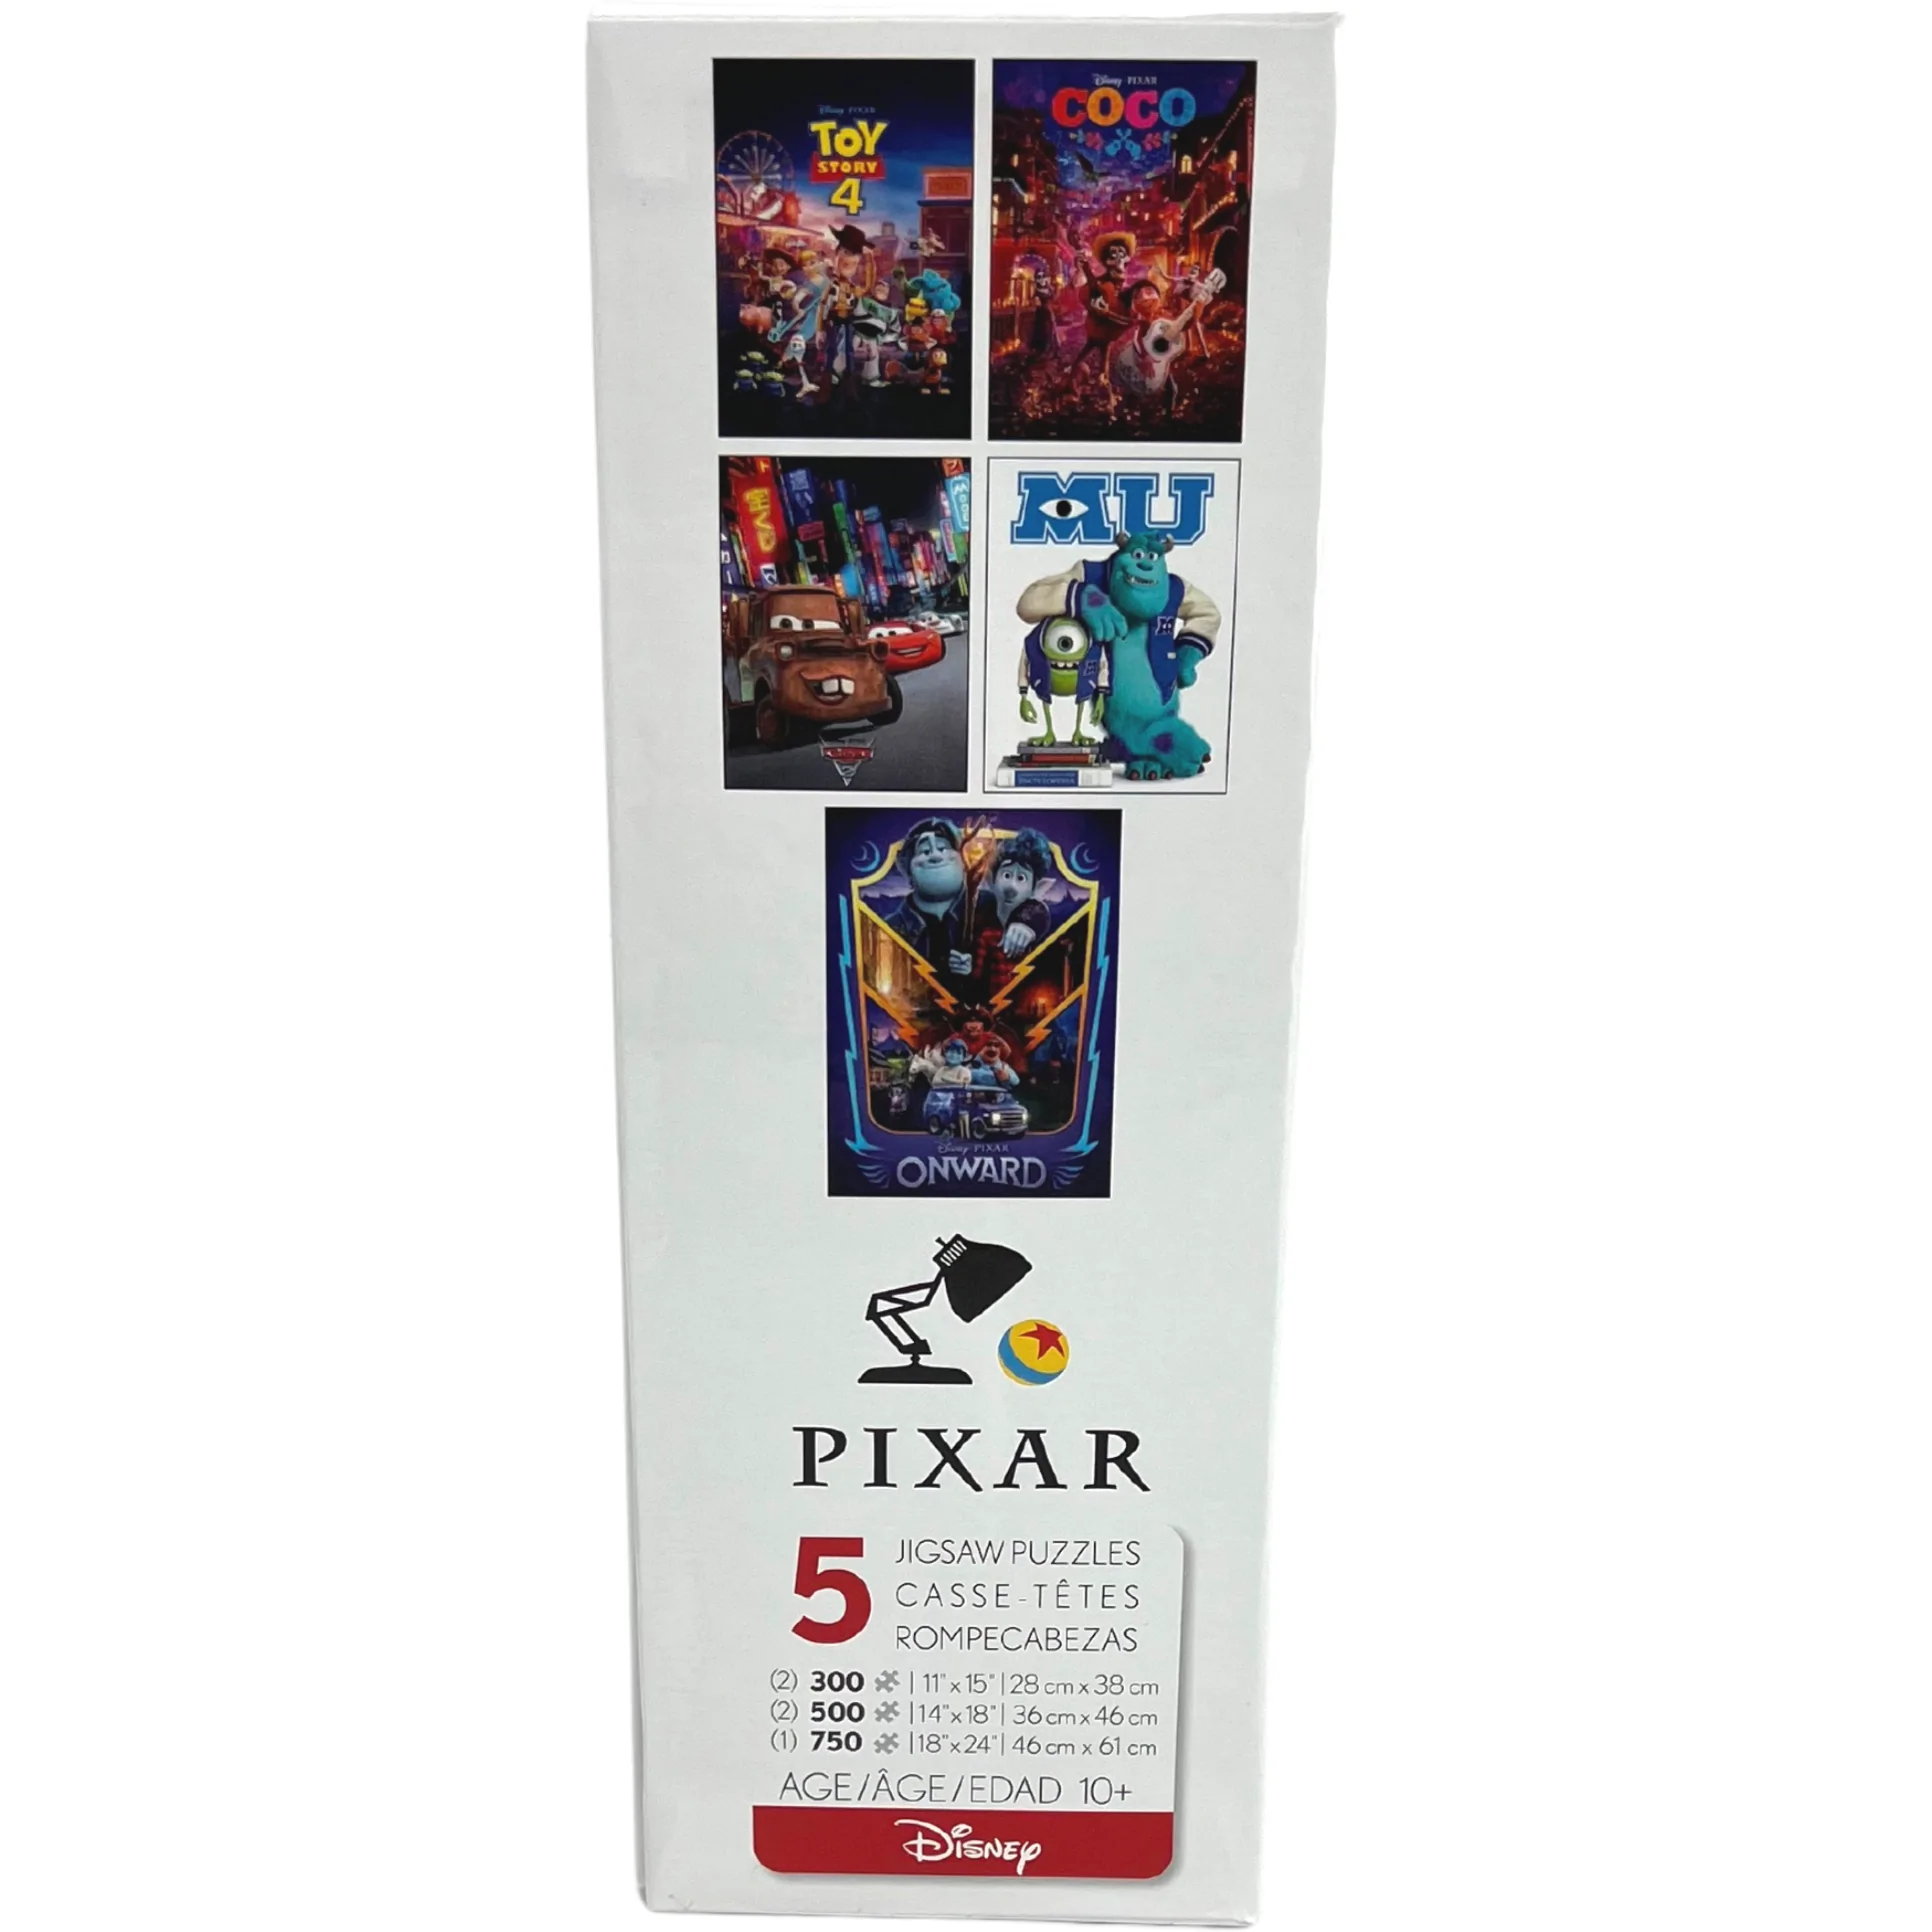 Disneys Pixar 5 Pack